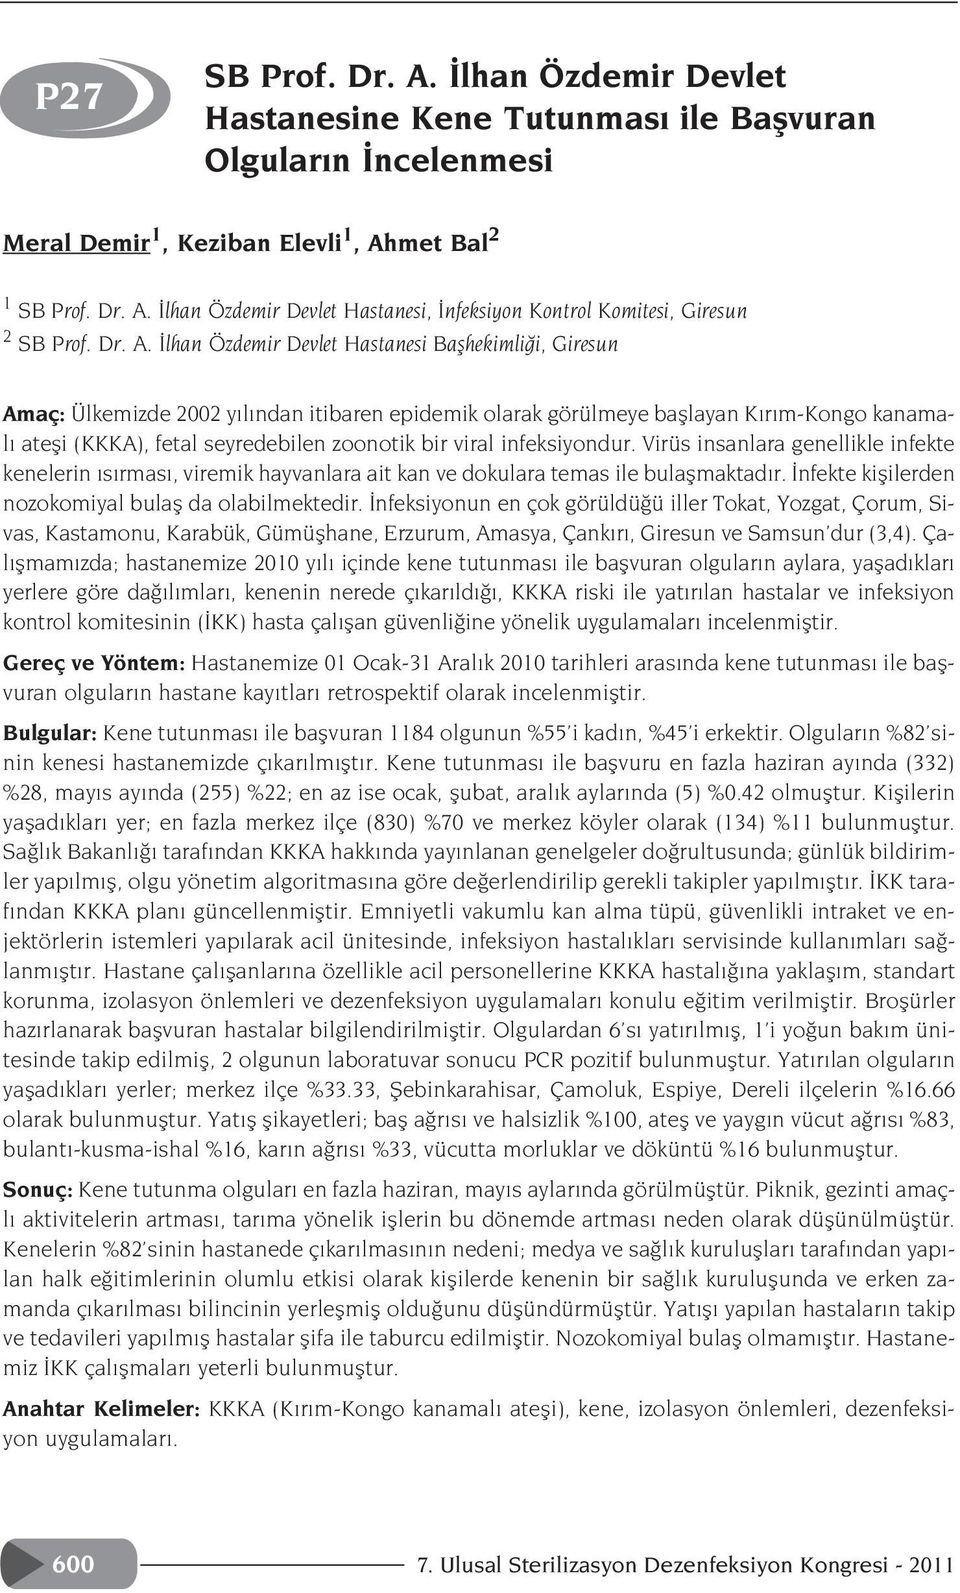 lhan Özdemir Devlet Hastanesi Baflhekimli i, Giresun Amaç: Ülkemizde 2002 y l ndan itibaren epidemik olarak görülmeye bafllayan K r m-kongo kanamal atefli (KKKA), fetal seyredebilen zoonotik bir